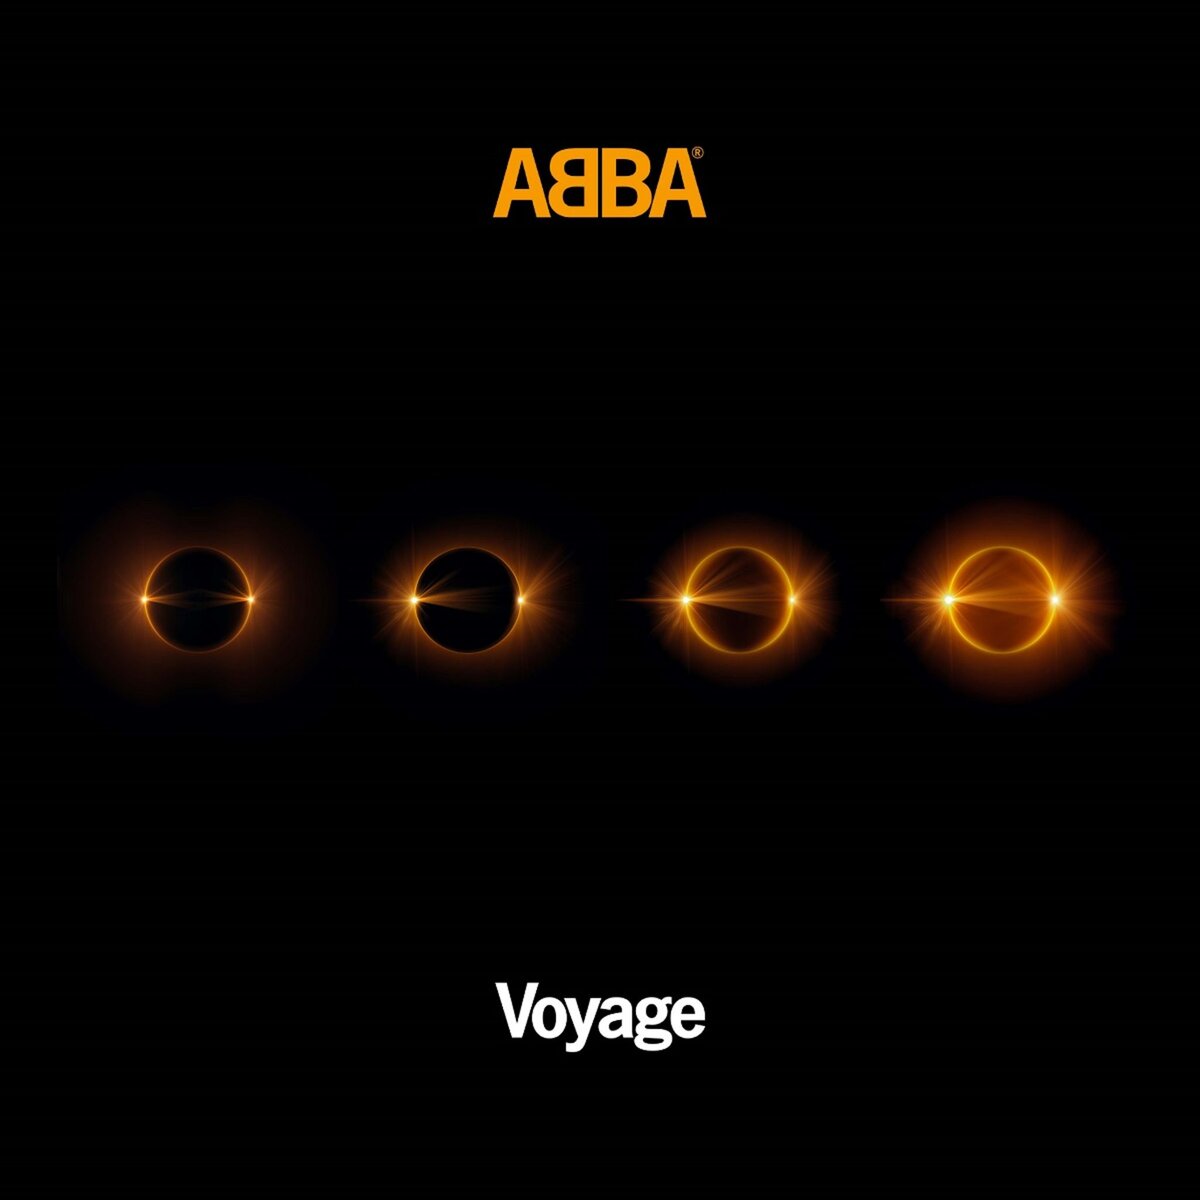 Voyage - ABBA CD